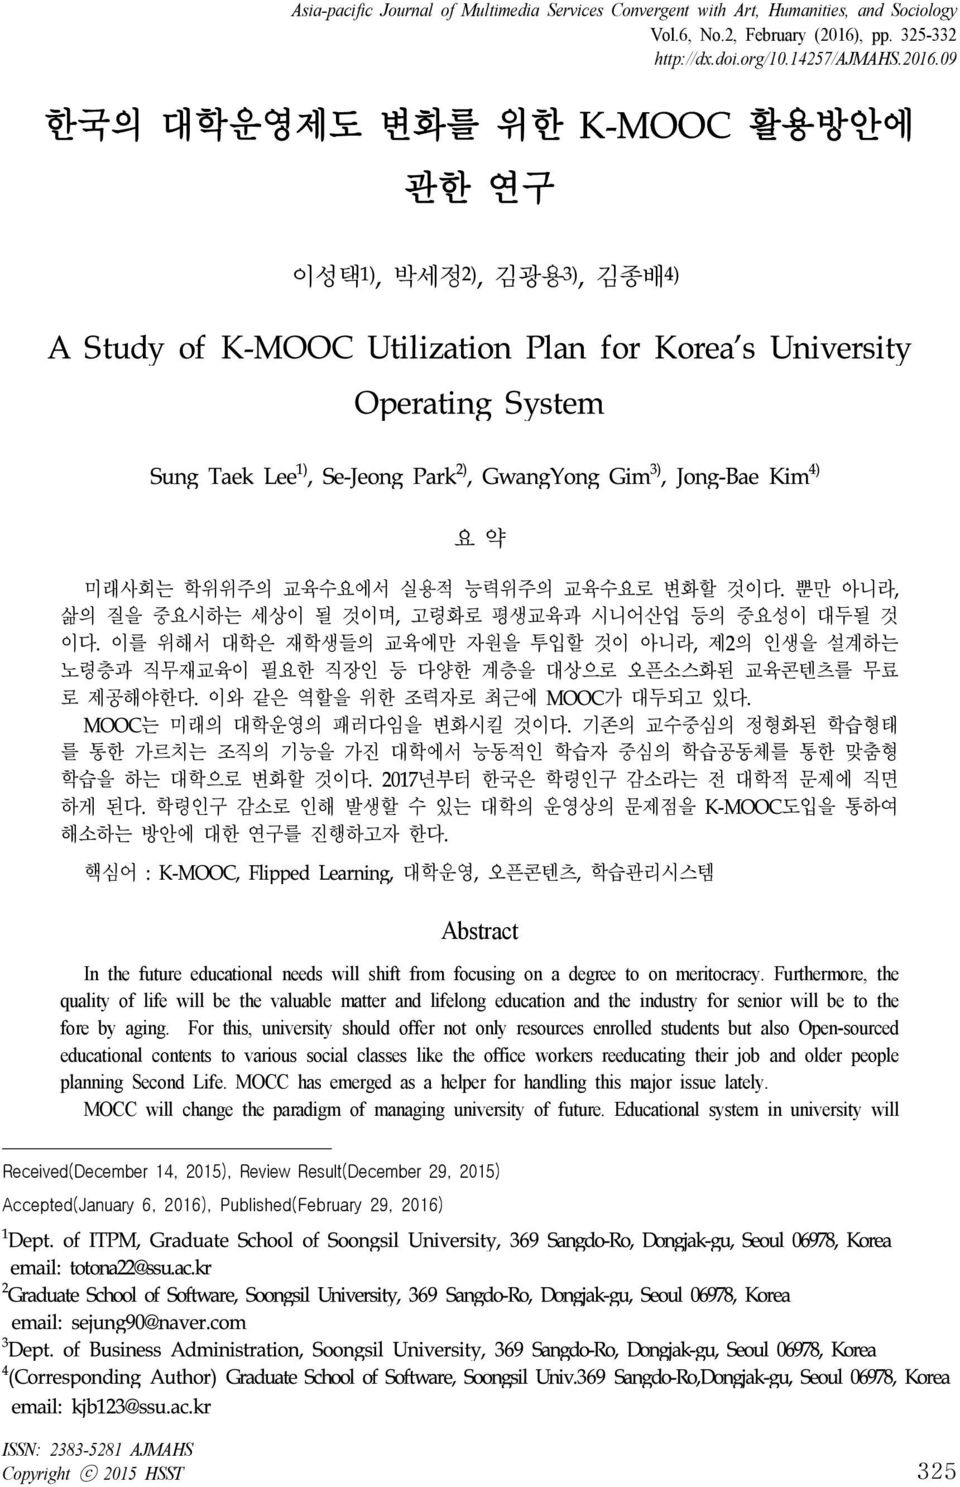 09 한국의 대학운영제도 변화를 위한 K-MOOC 활용방안에 관한 연구 이성택 1), 박세정 2), 김광용 3), 김종배 4) A Study of K-MOOC Utilization Plan for Korea's University Operating System Sung Taek Lee 1), Se-Jeong Park 2), GwangYong Gim 3),